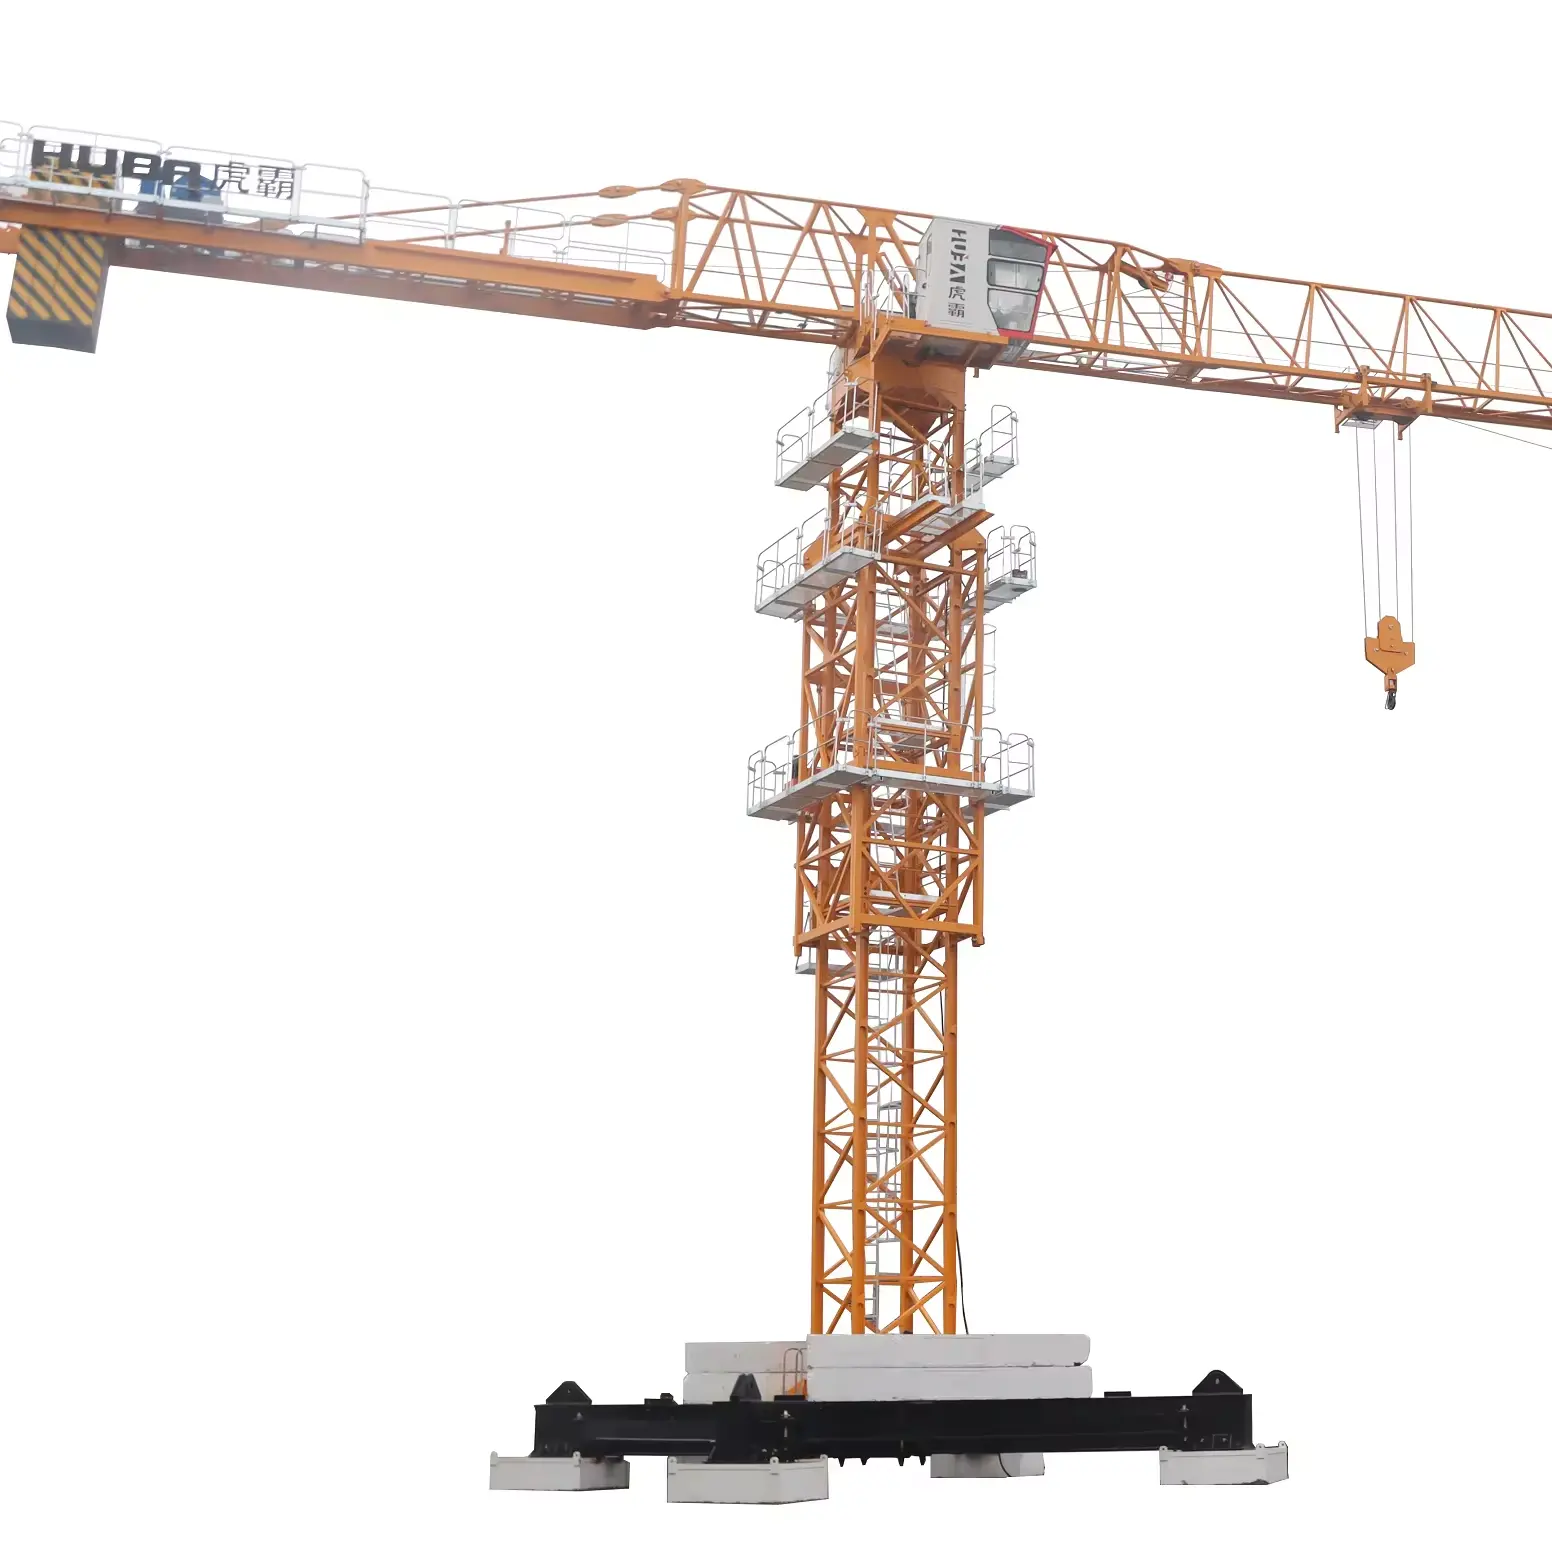 HUBA Flat Top Tower Crane T7535-18 18ton 75m jib price